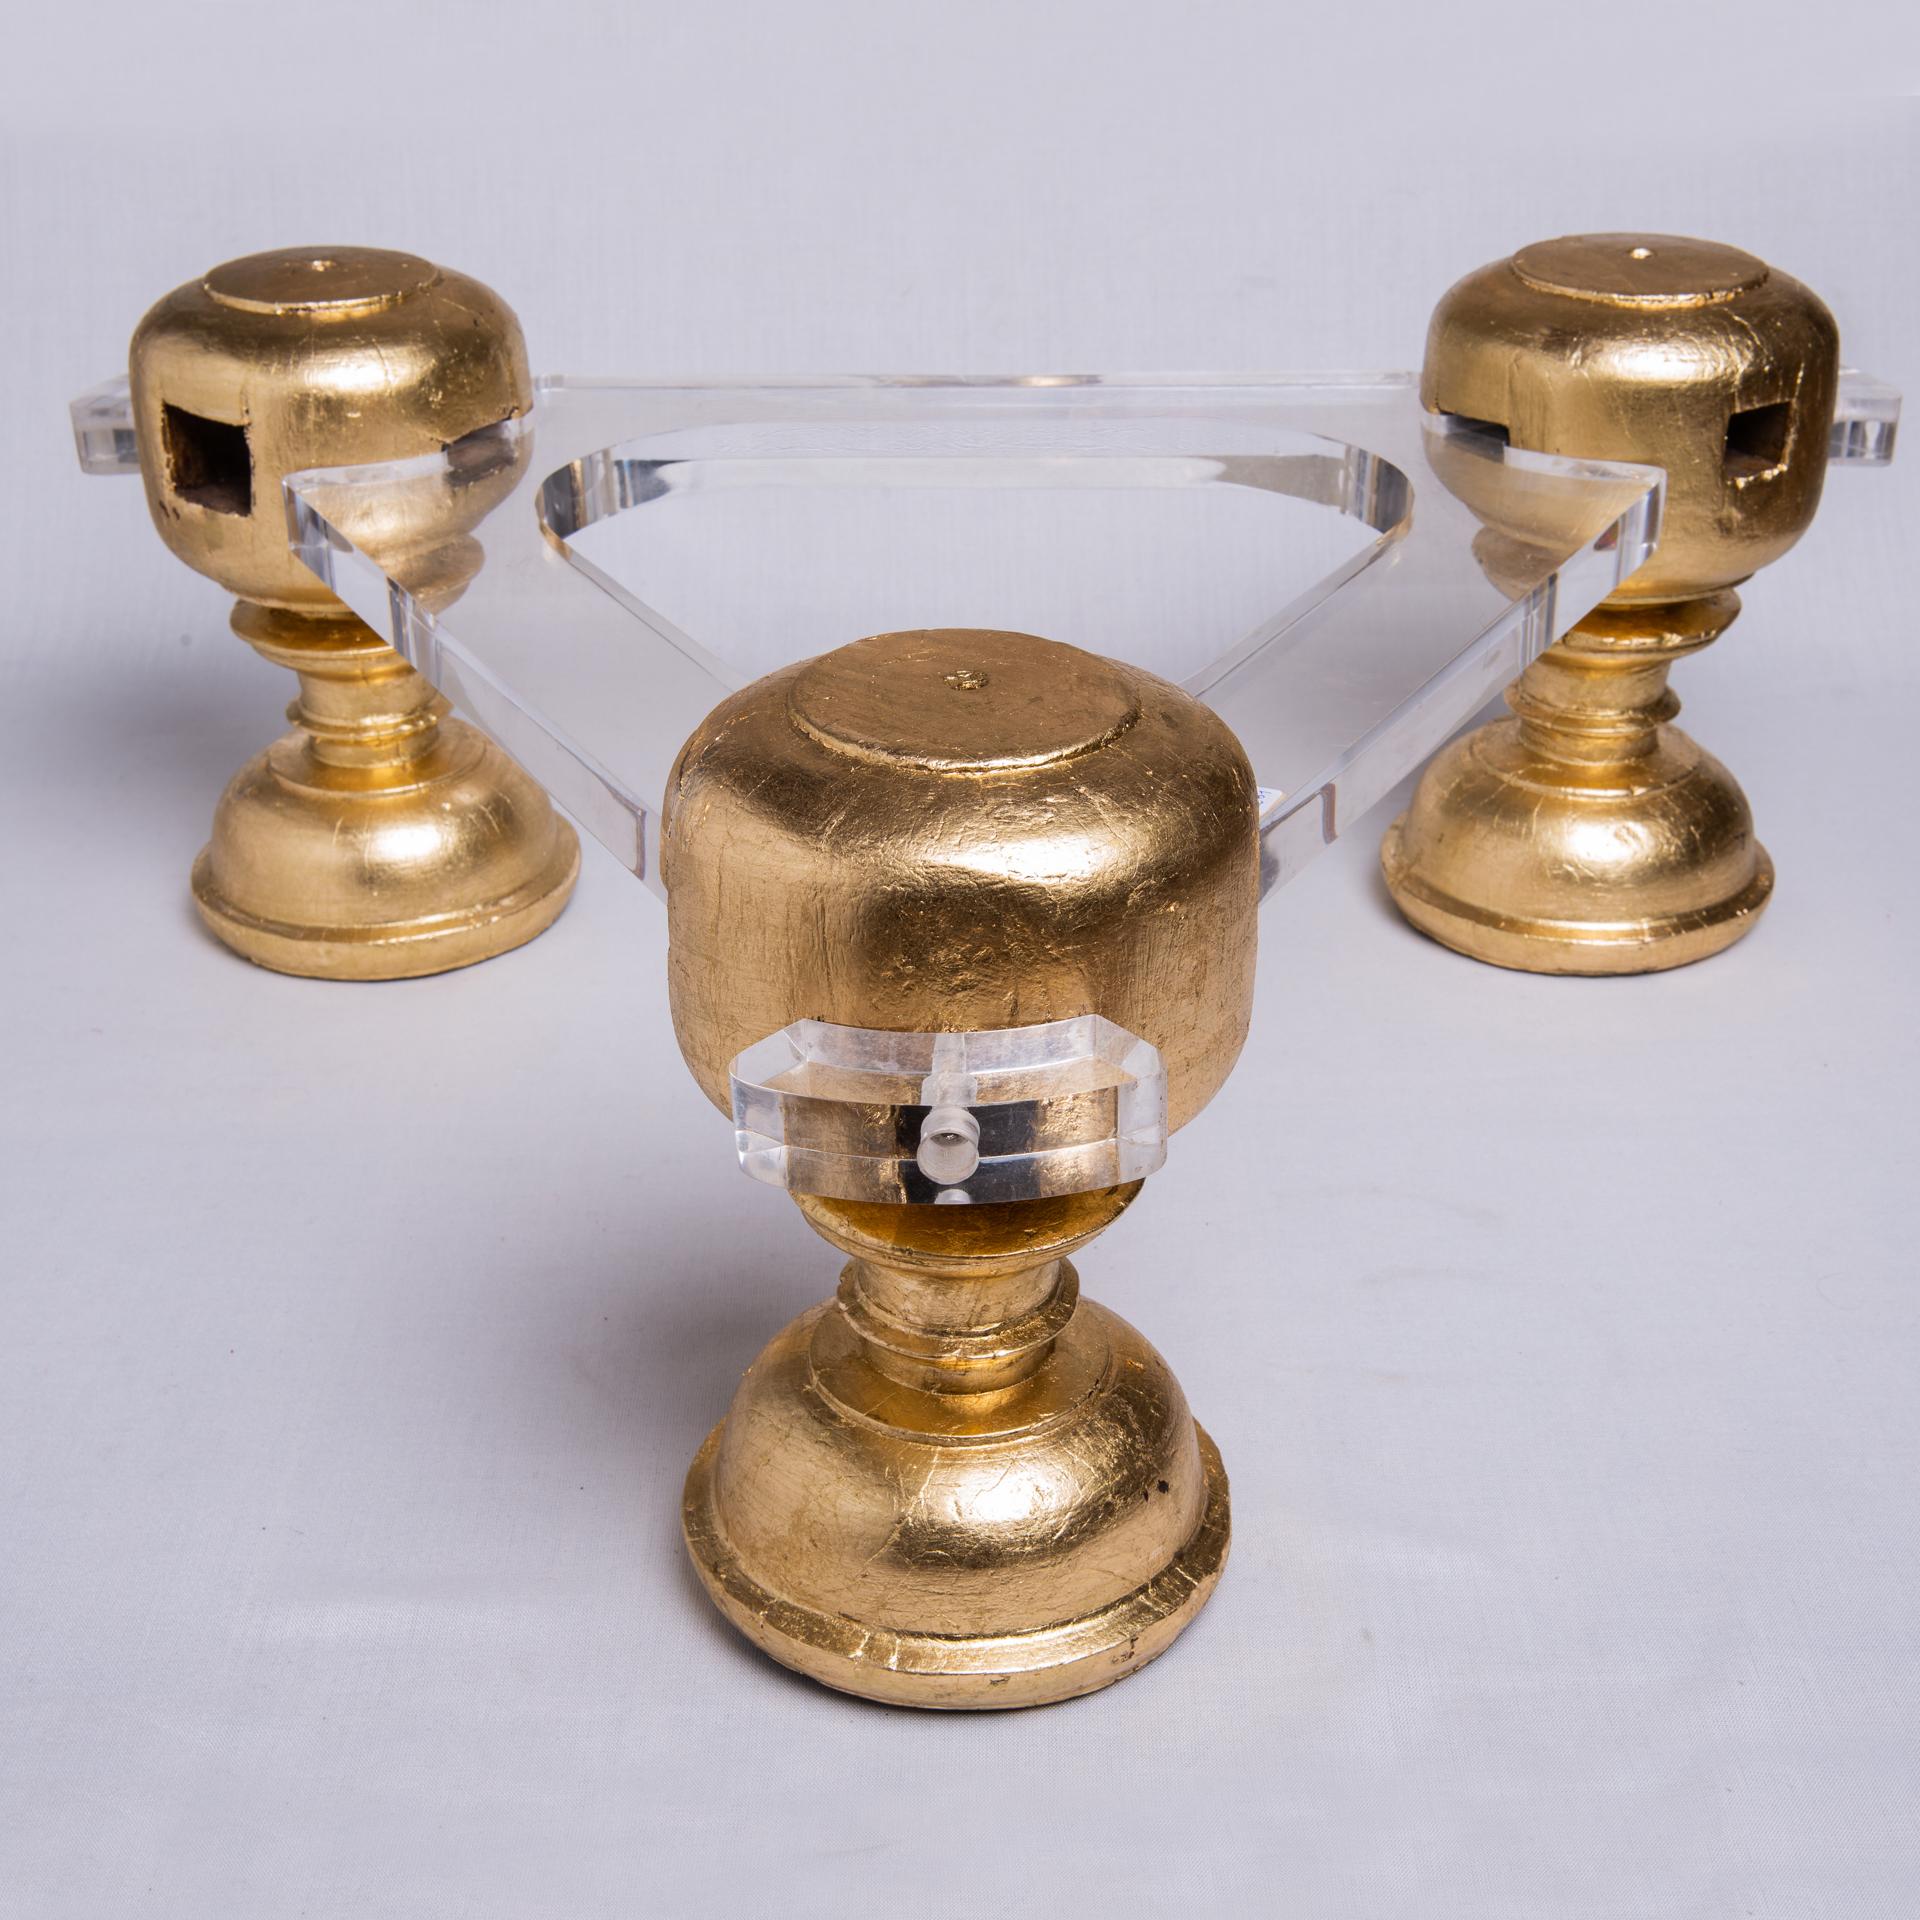 Base pour table basse avec trois bases de sculptures rondes antiques en bois doré, reliées par du plexi pour un style moderne. Porte un plateau rond en verre.
  